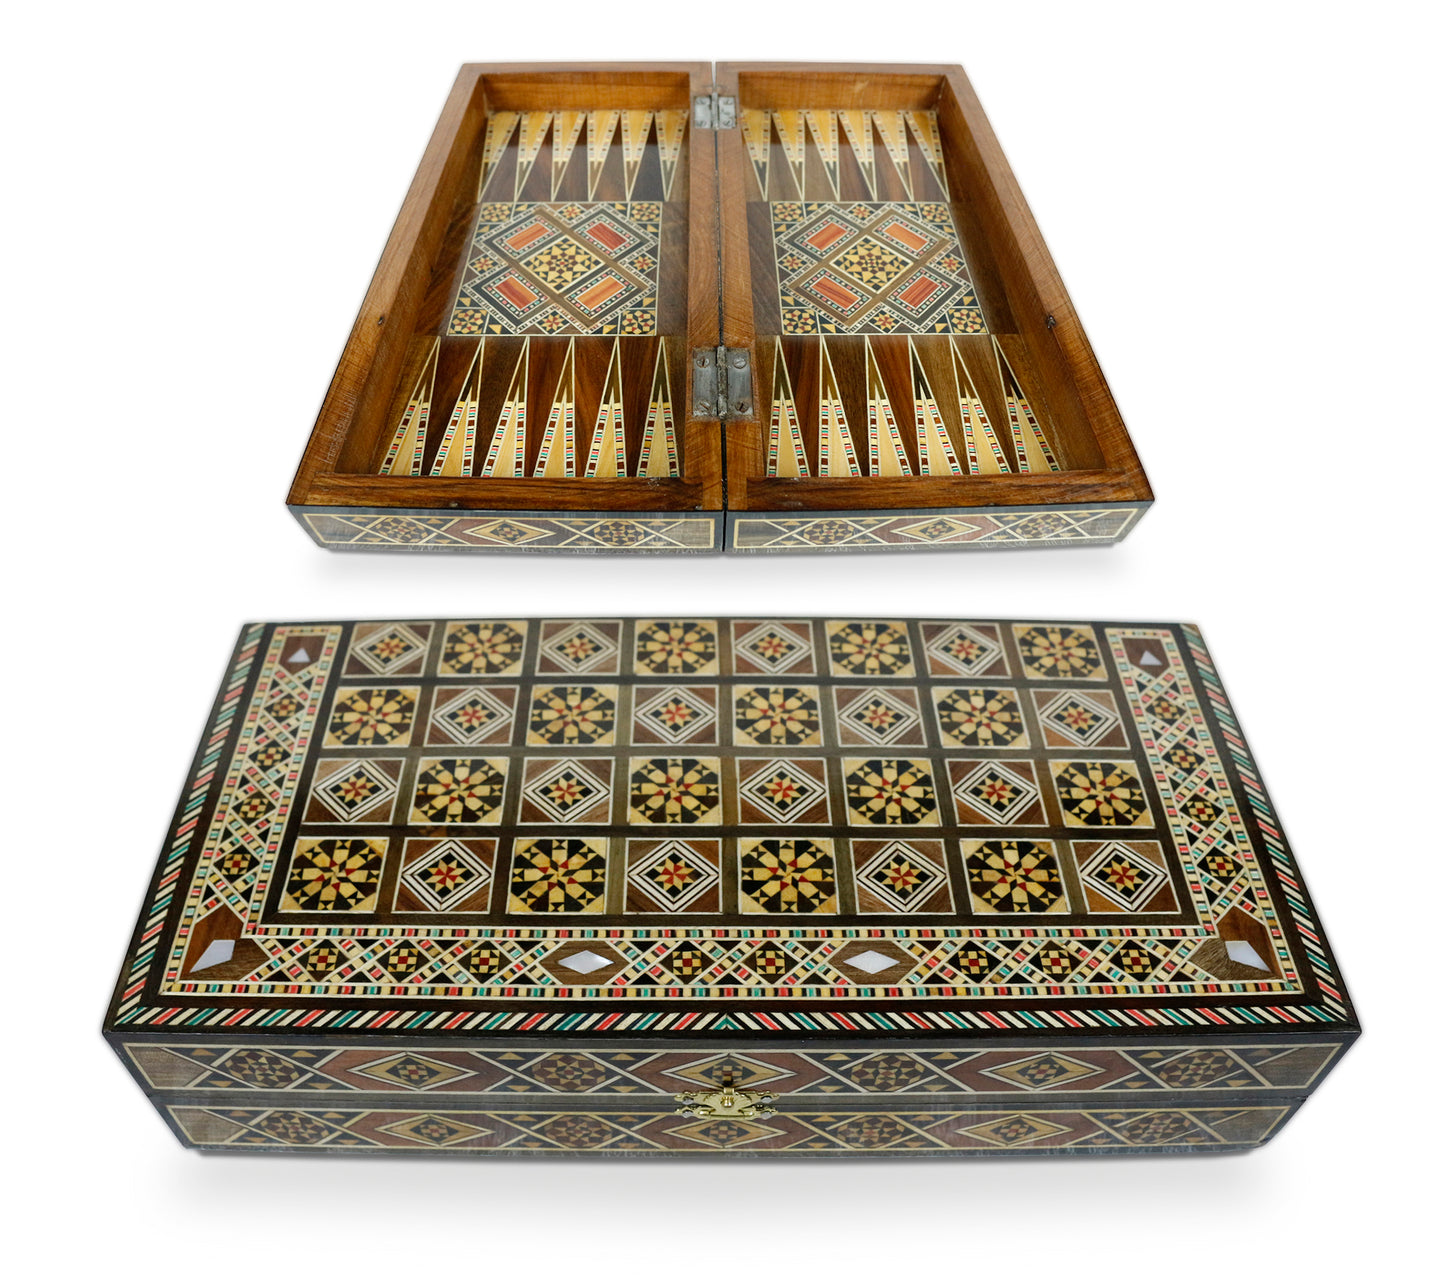 Neu 30 x 30 cm Holz Backgammon/Schachspiel/Dama Brett  BT 301 mit Holz Backgammon Steine